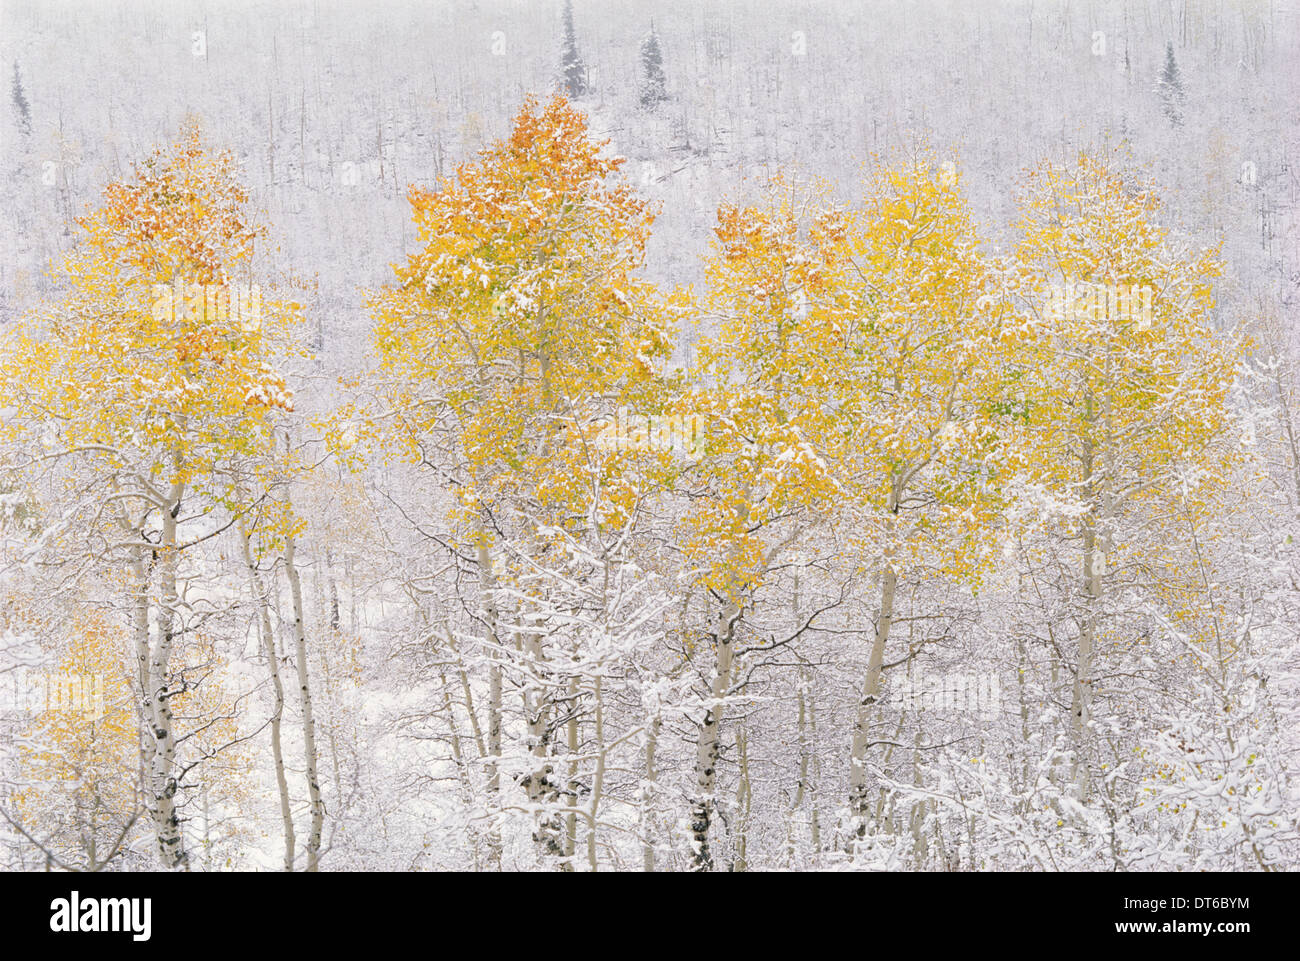 Une forêt de trembles dans les montagnes Wasatch, frappant avec feuillage d'automne jaune et rouge. La neige au sol. Banque D'Images